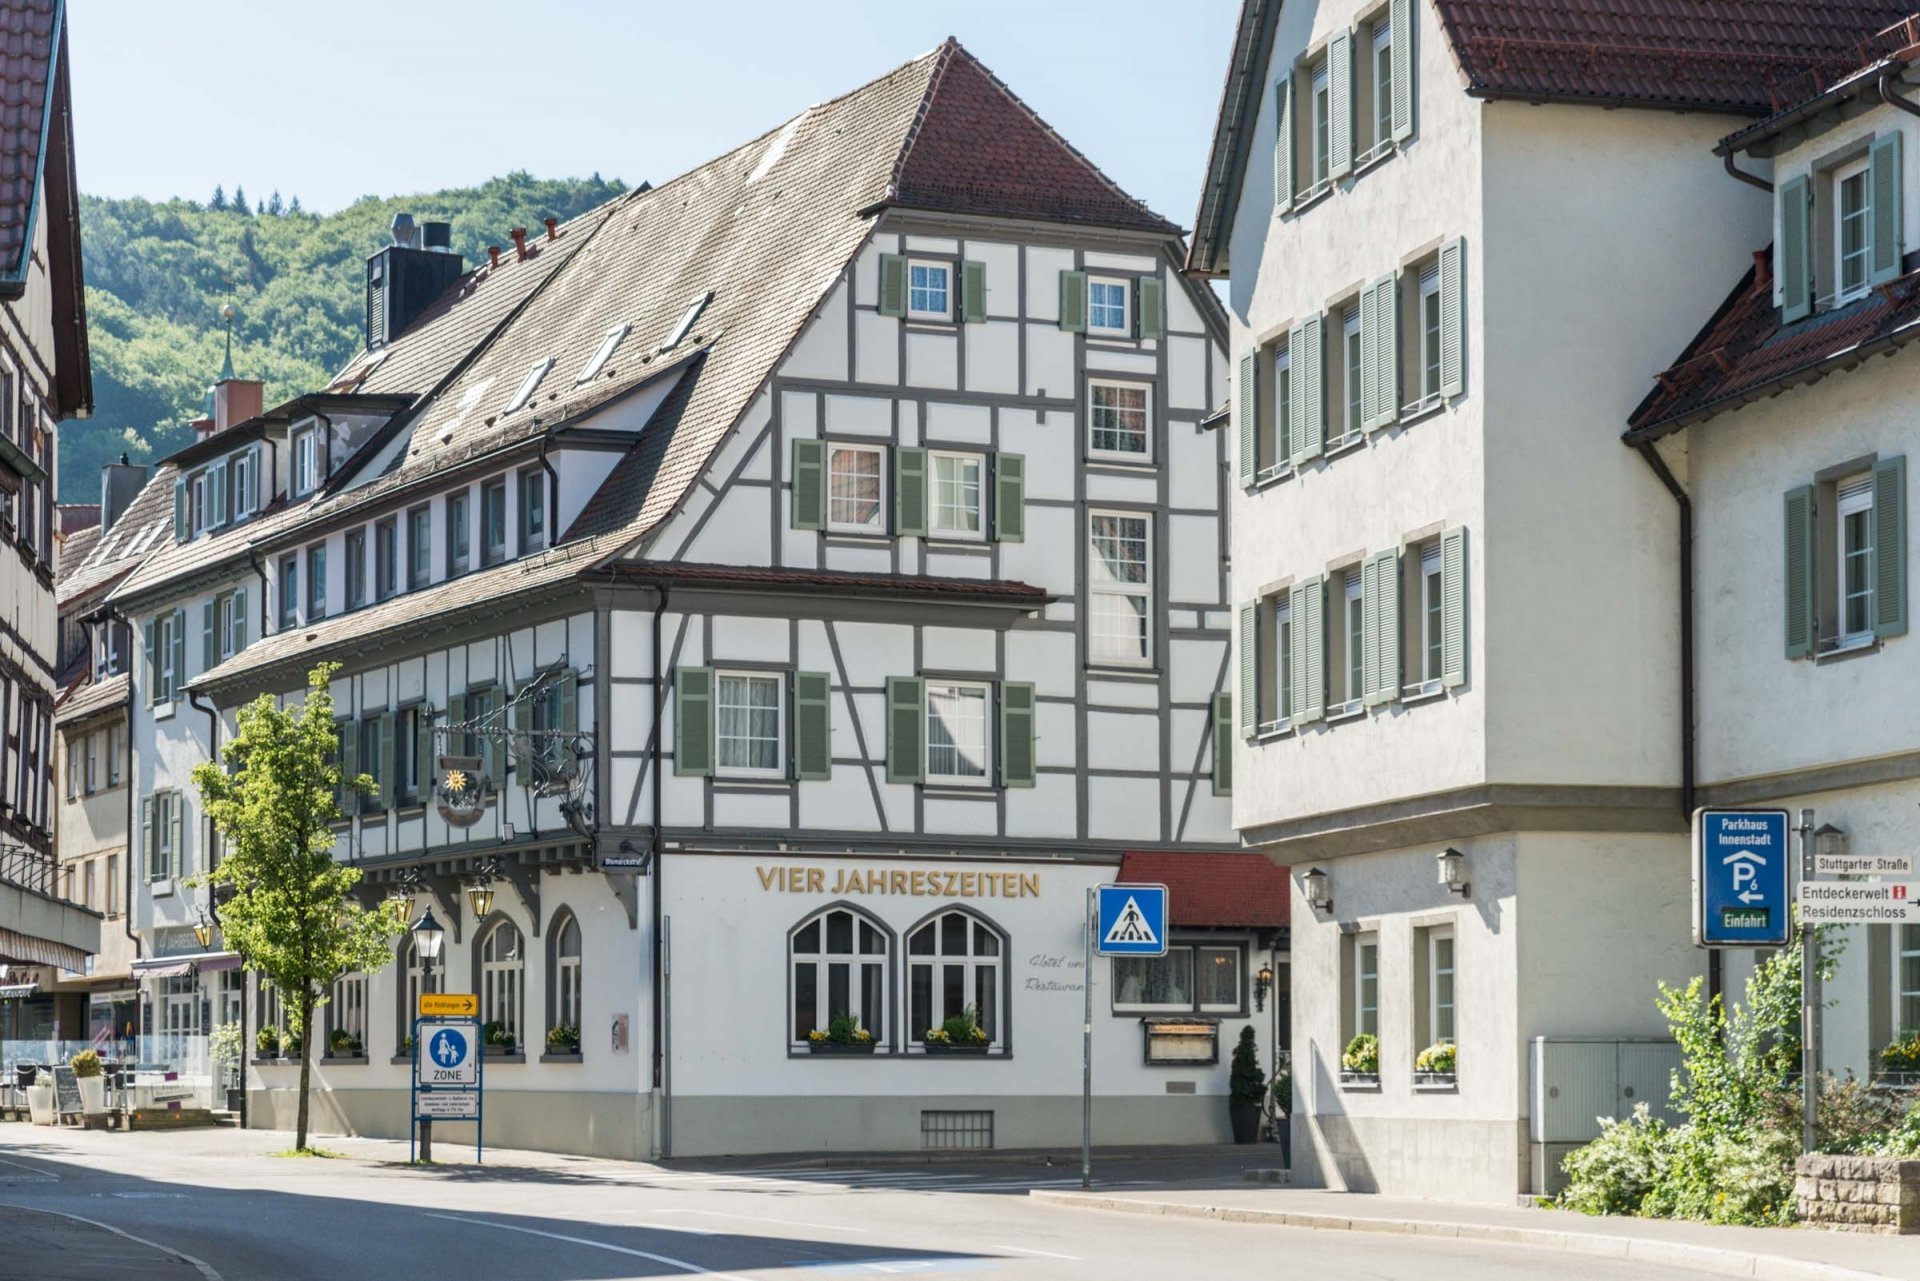 8 Tage / 7 Nächte Urlaub im Biosphärengebiet Schwäbische Alb – Flair Hotel Vier Jahreszeiten (3.5 Sterne) in Bad Urach, Baden-Württemberg inkl. Halbpension